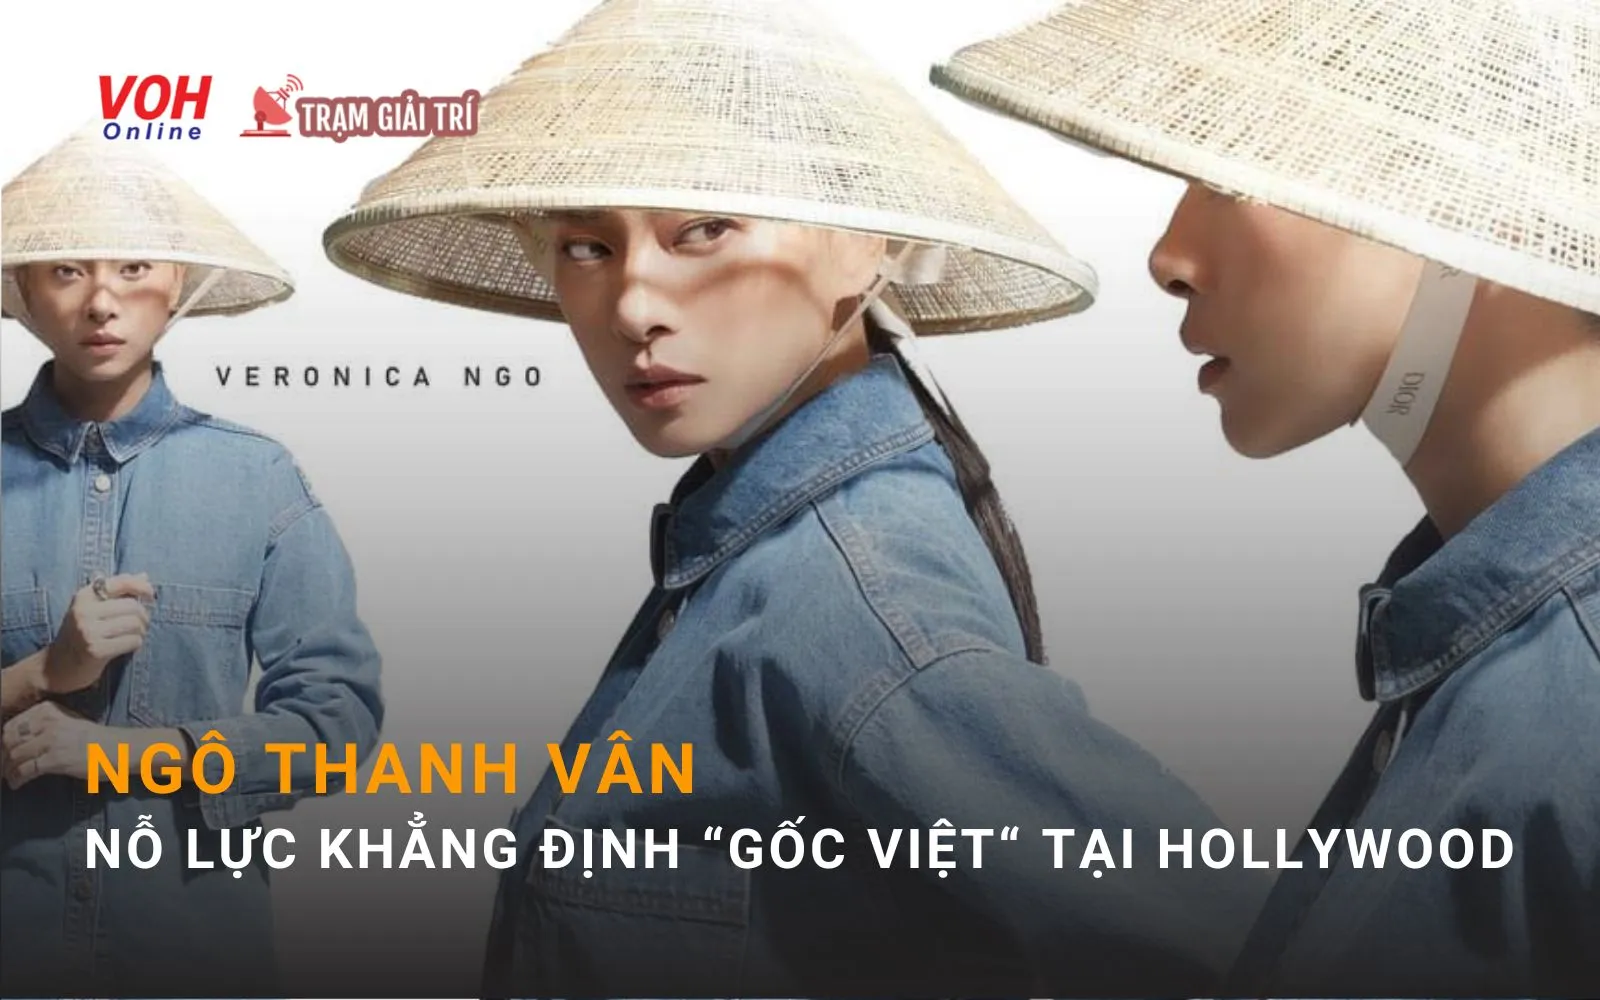 Ngô Thanh Vân nỗ lực khẳng định gốc gác Việt Nam bằng những câu thoại trong phim Hollywood